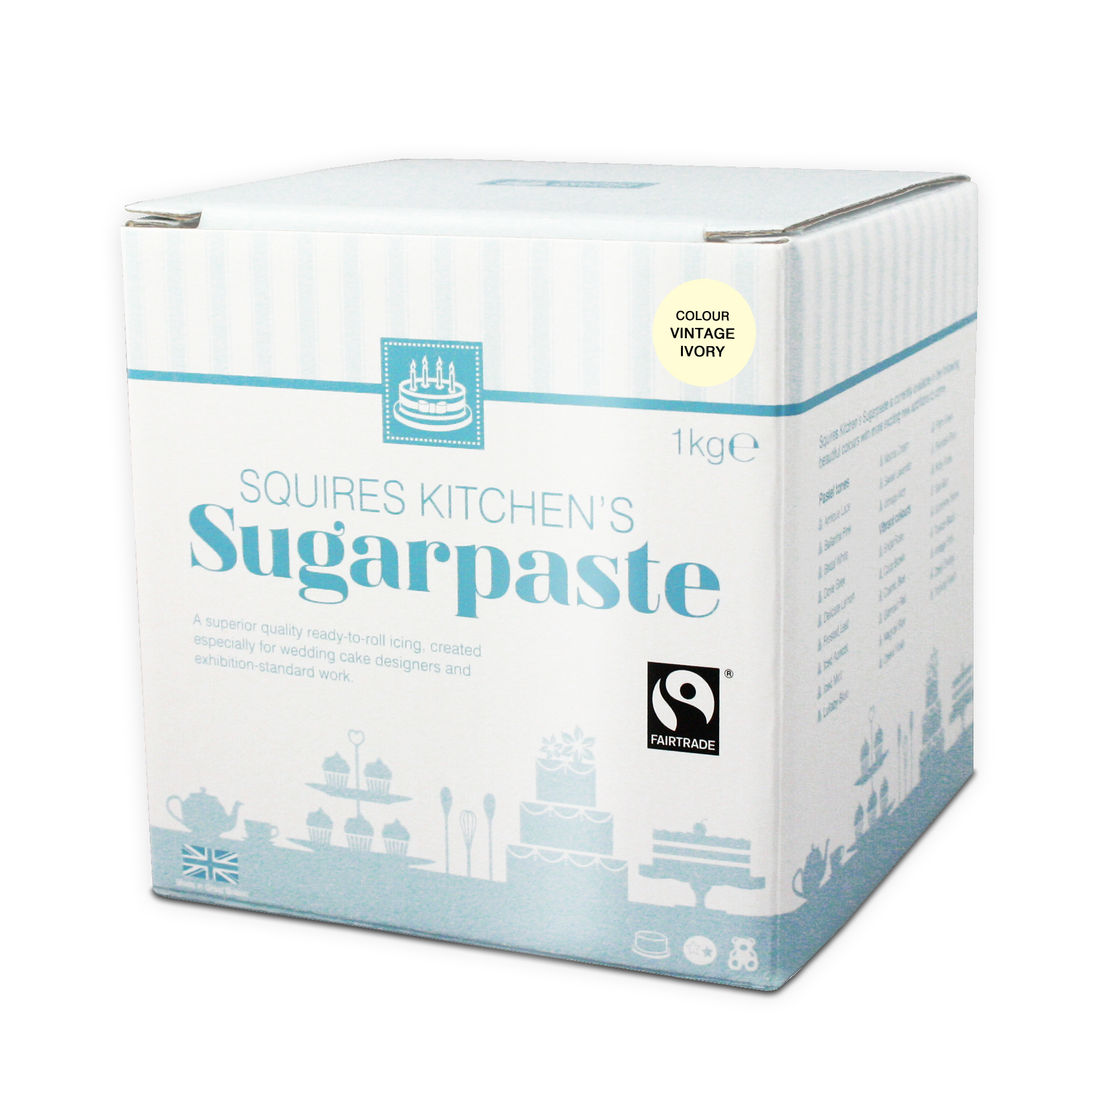 SK Sugarpaste - Vintage Ivory 1kg